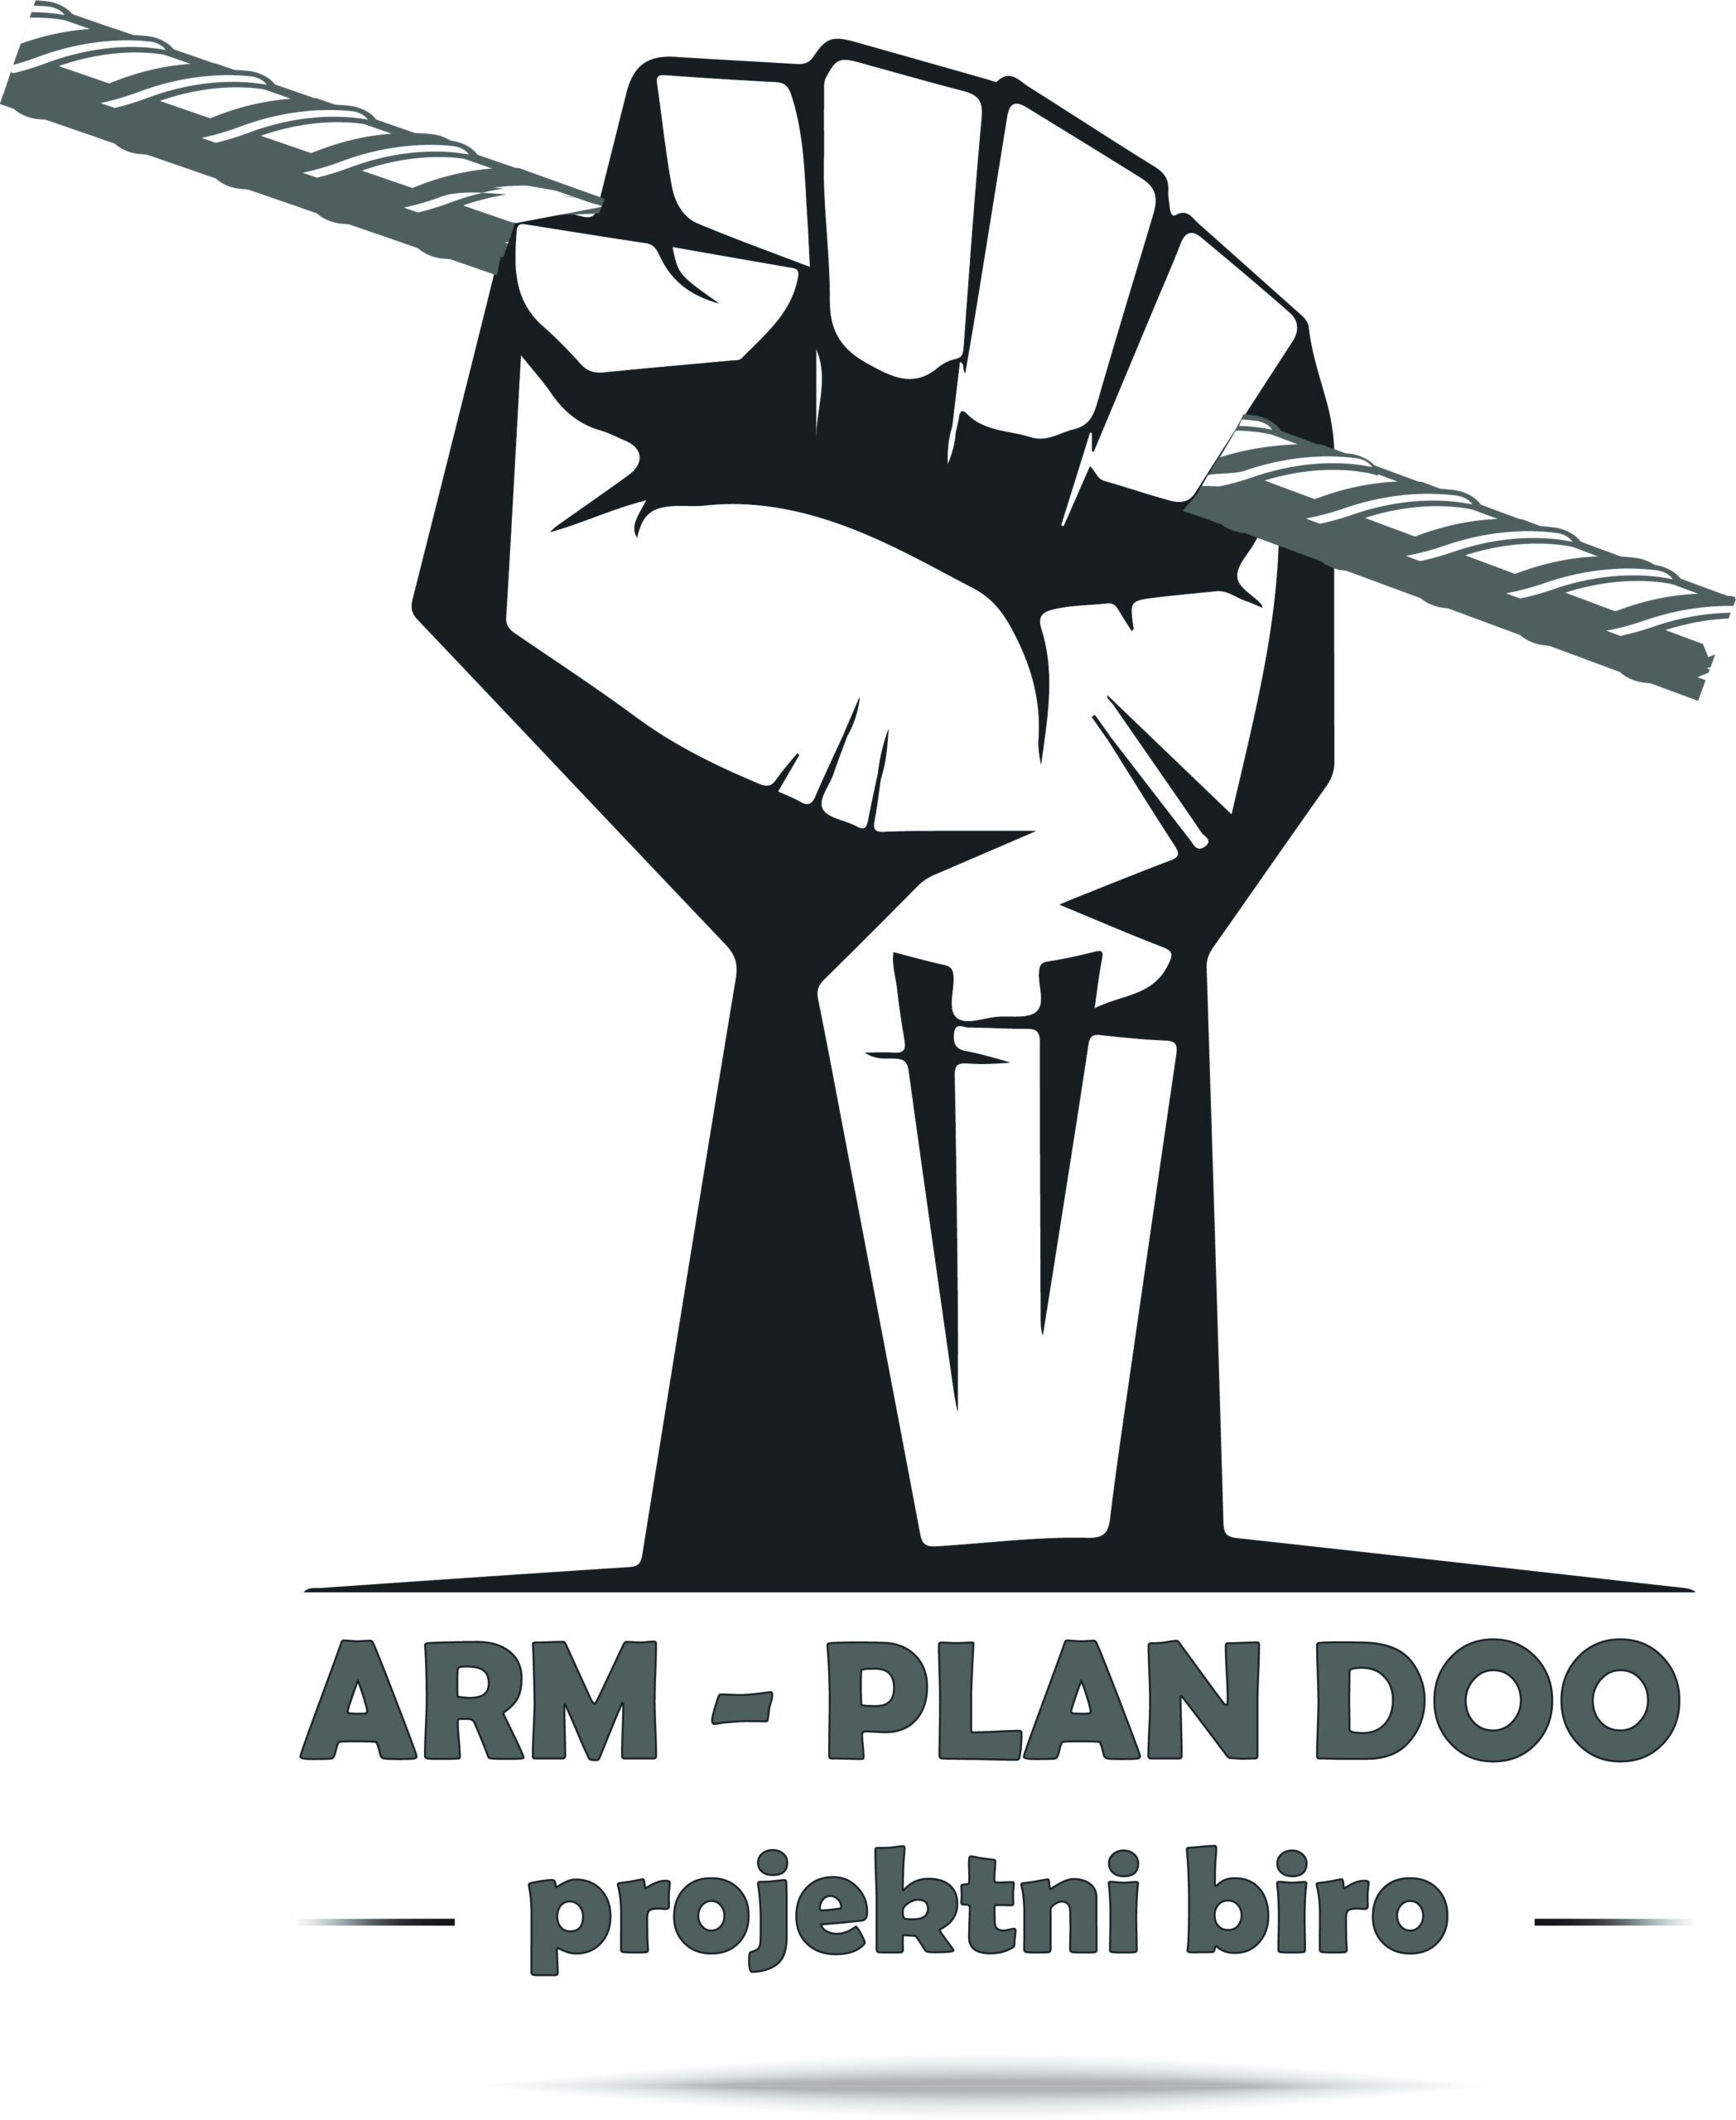 ARM-PLAN DOO